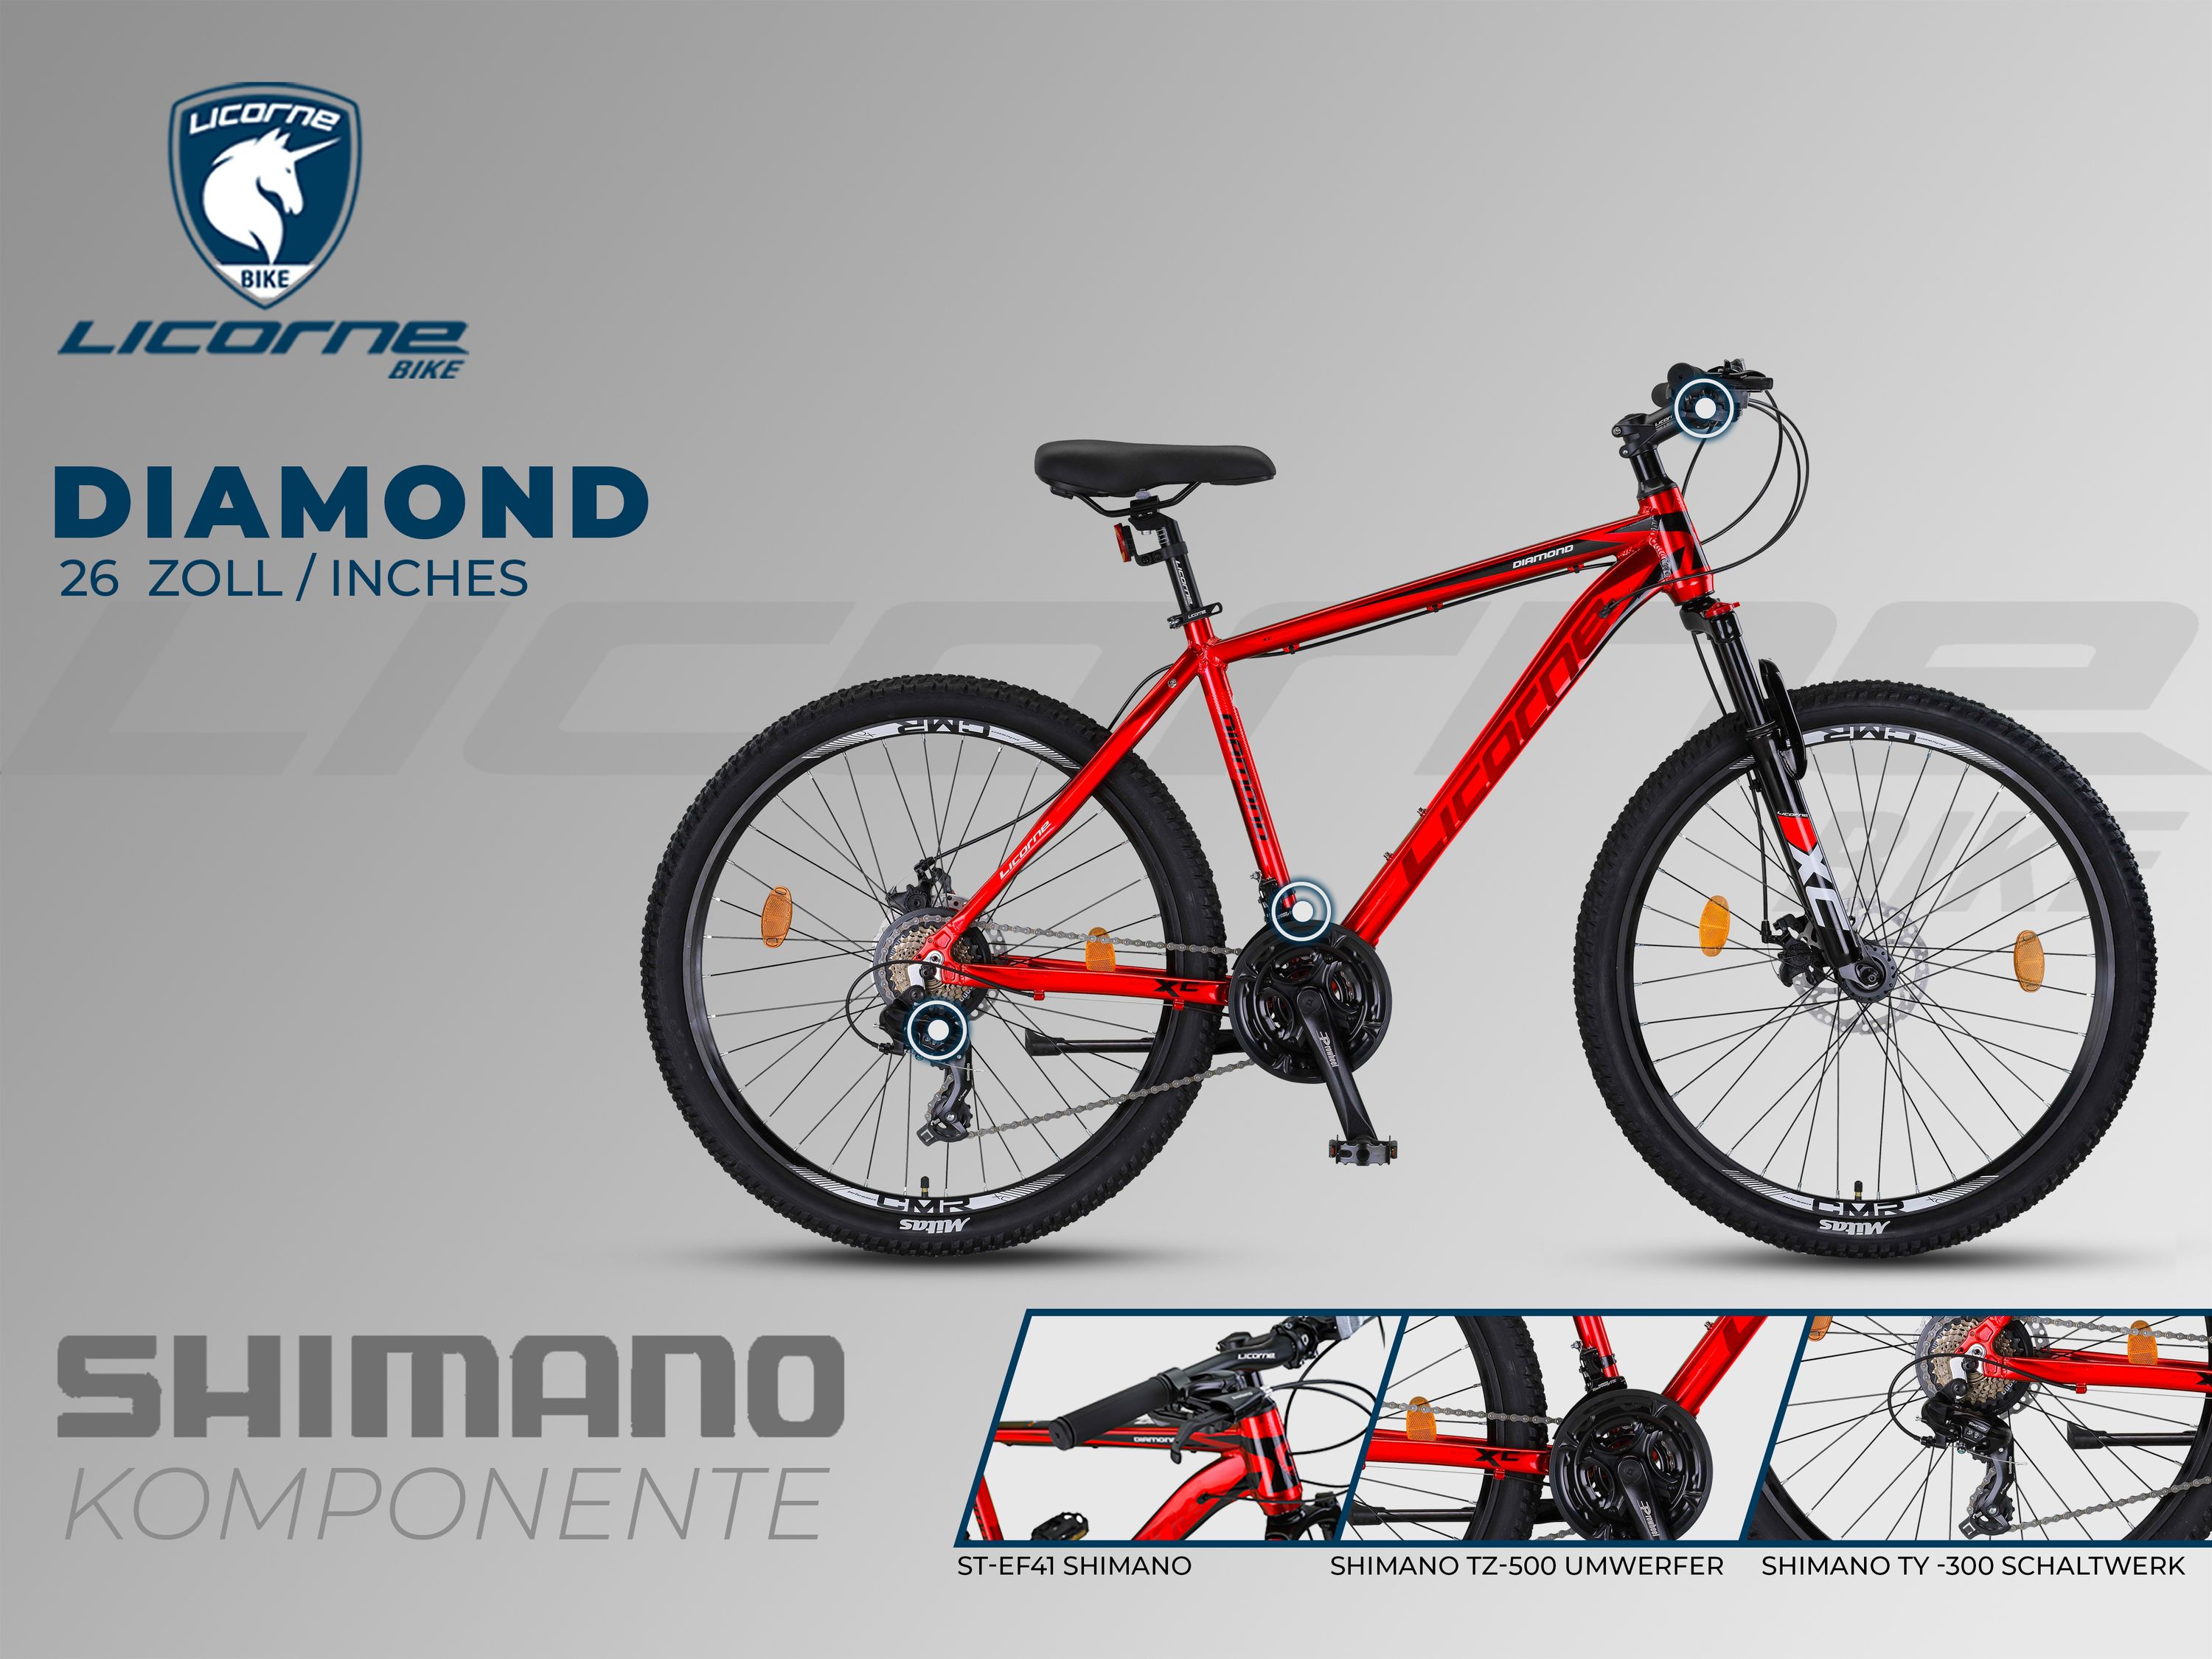 Licorne Bike Diamond Premium Mountainbike Aluminium, vélo pour garçons, filles, hommes et femmes - dérailleur 21 vitesses - frein à disque vélo homme, fourche avant réglable 26, 27.5 et 29 pouces